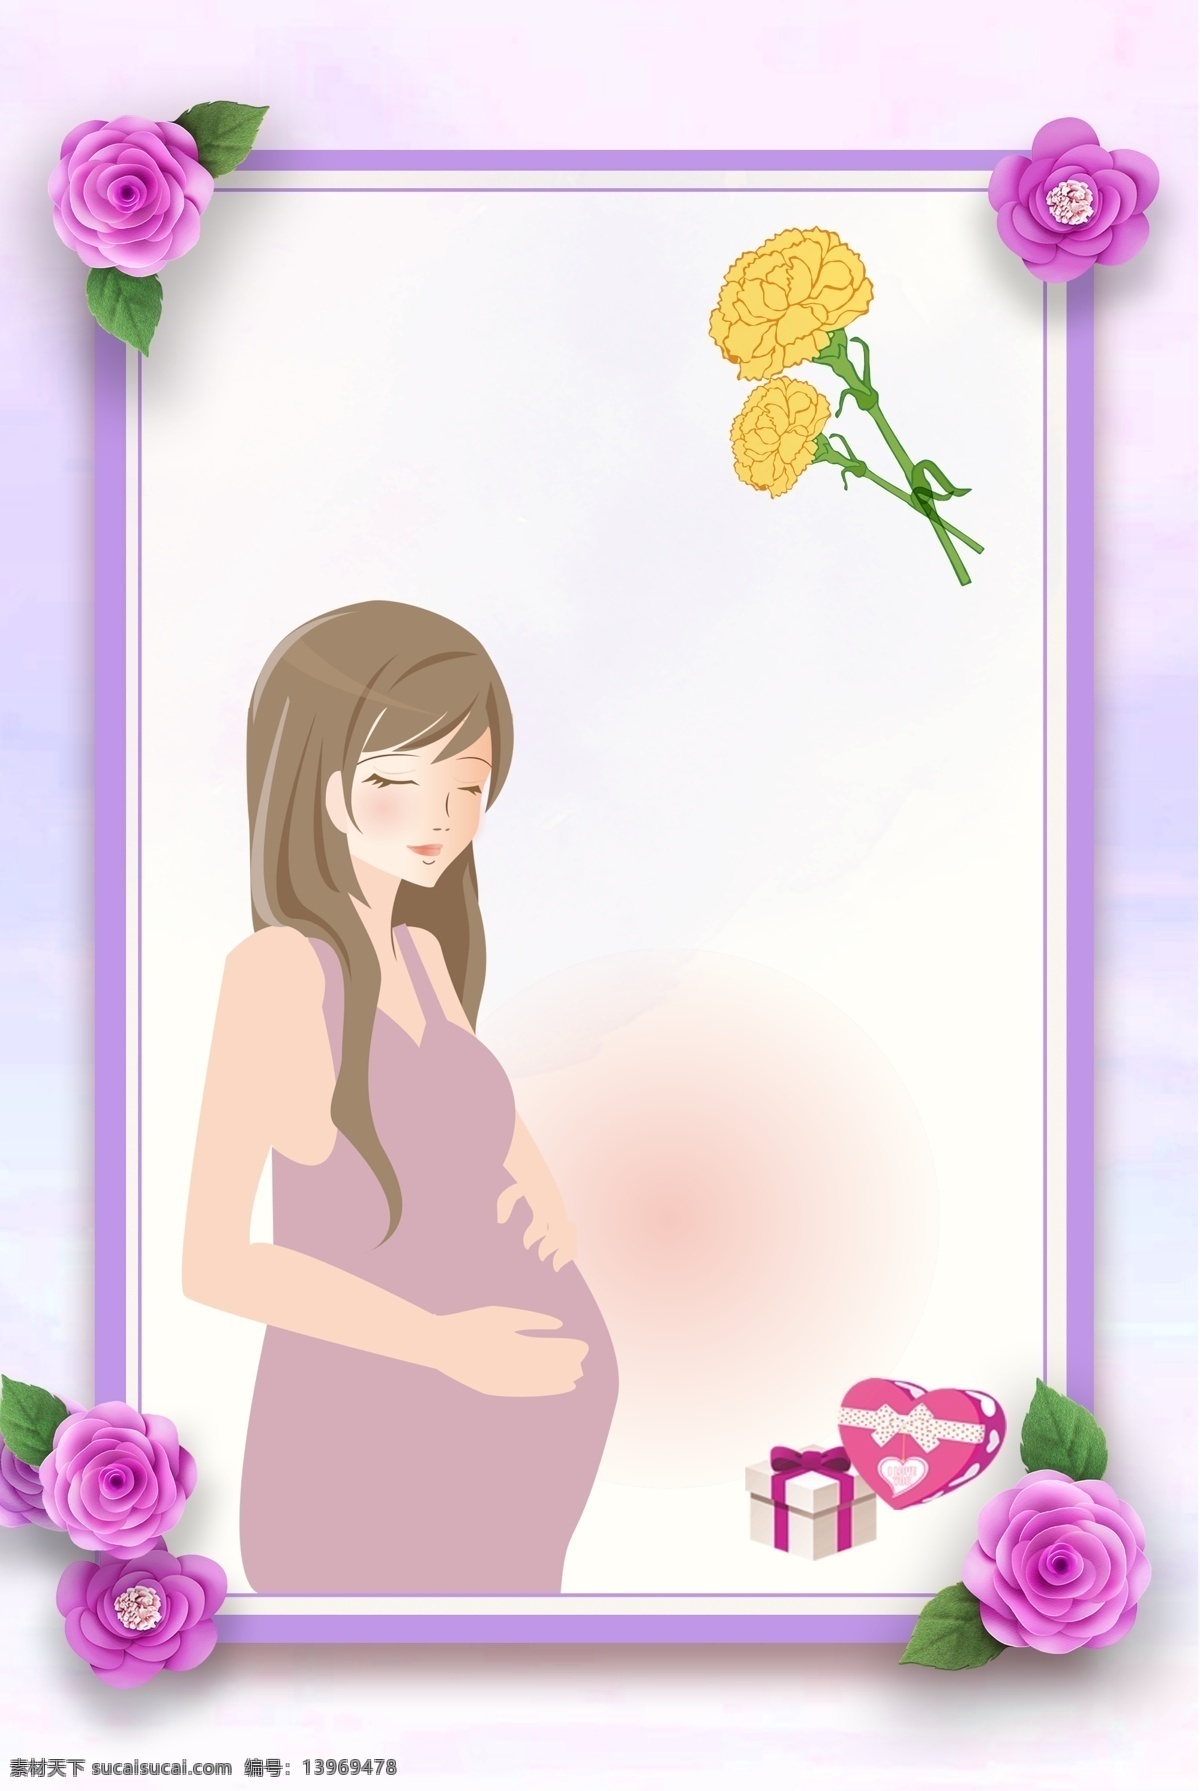 紫色 温馨 花卉 母亲节 海报 背景 文艺 清新 卡通 手绘 质感 纹理 边框